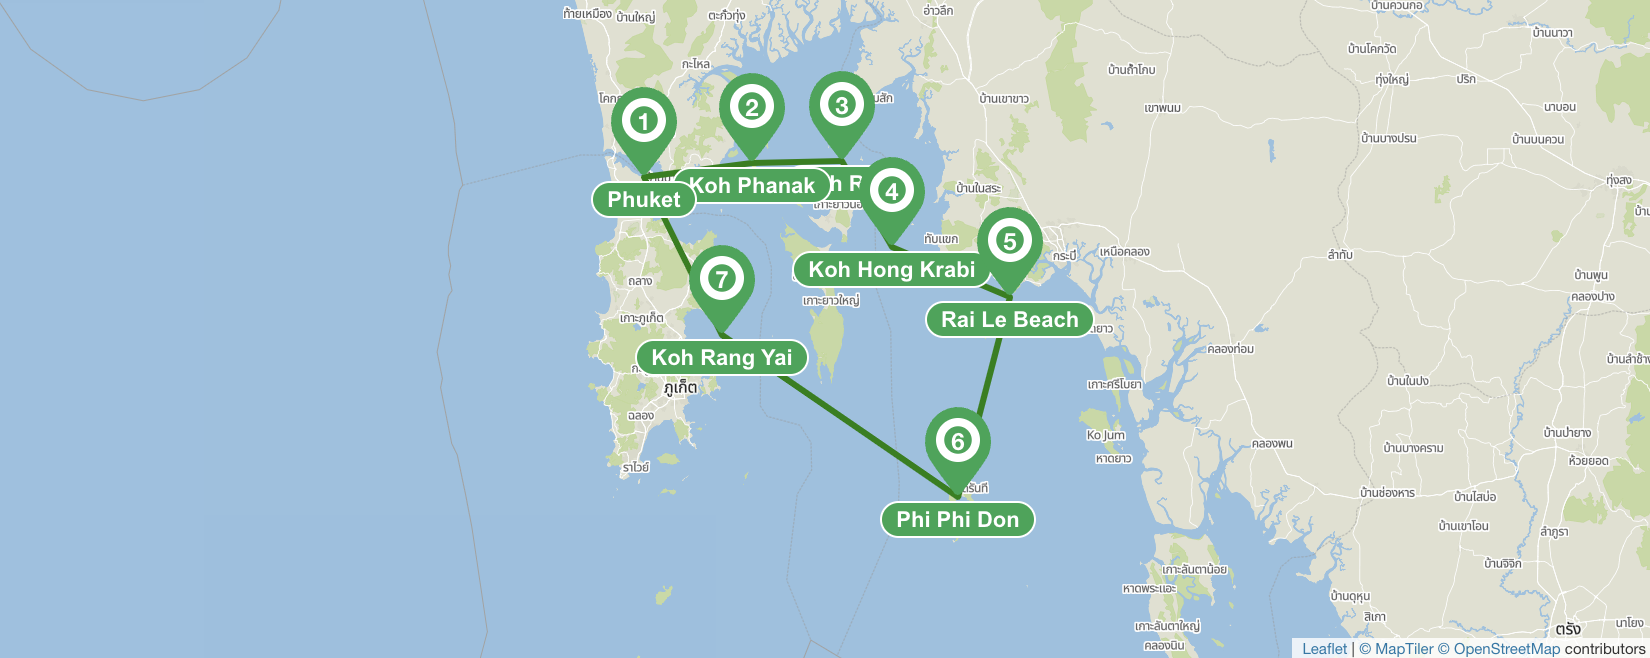 Itinerario de navegación desde Phuket- 7 días